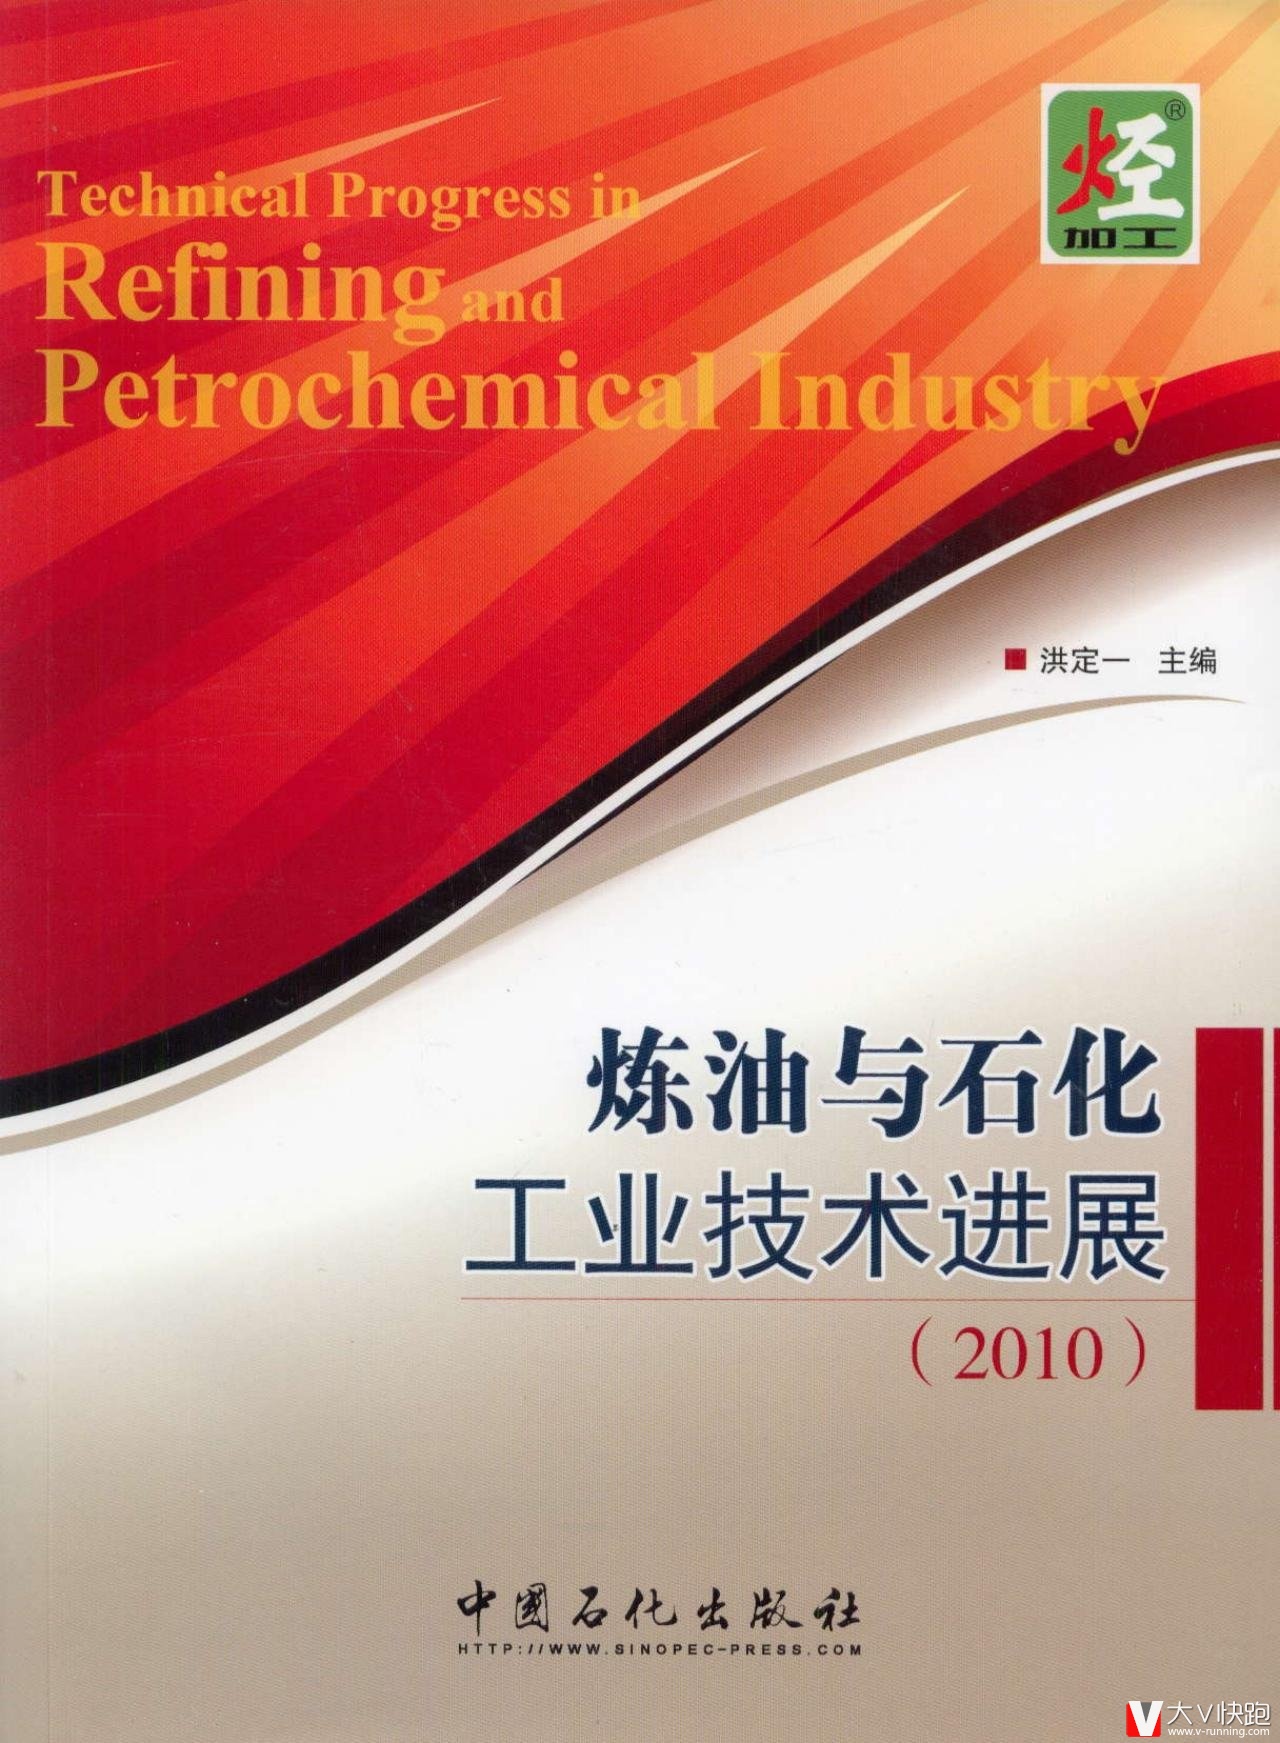 炼油与石化工业技术进展(2010)洪定一(编者)中国石化出版社